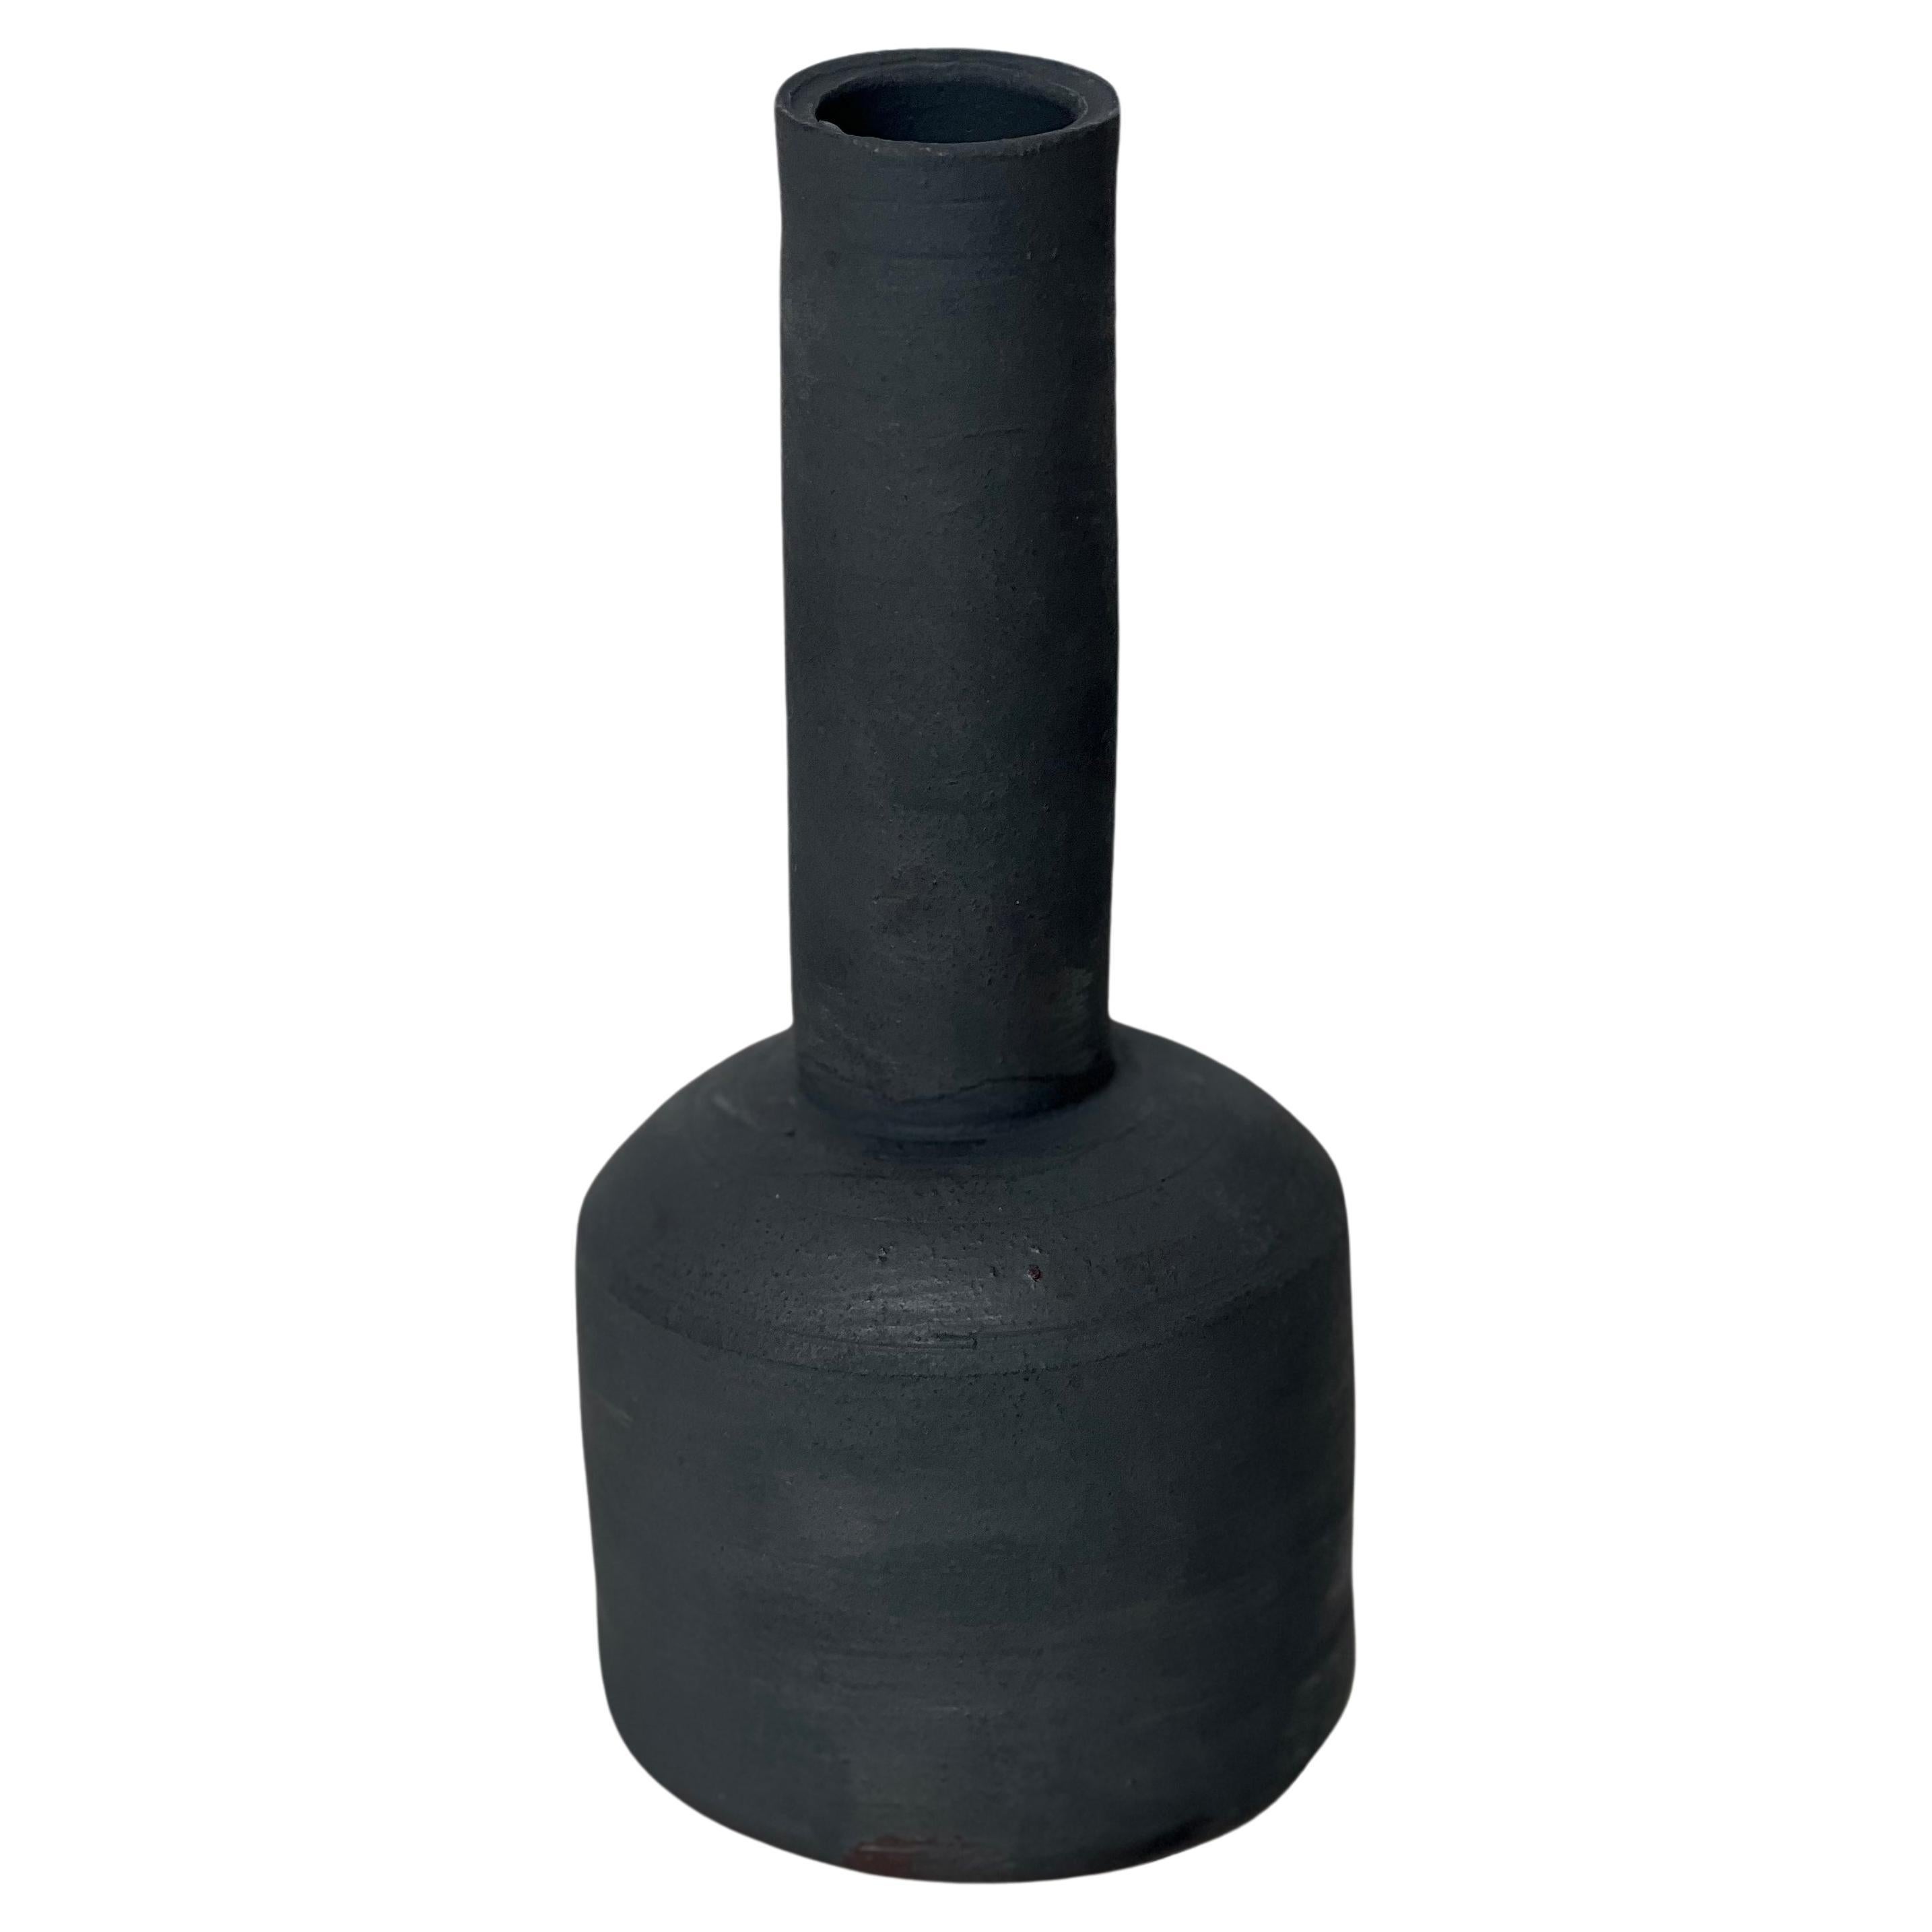 Handgefertigte Vase „Mallet Vase“ aus Steingut